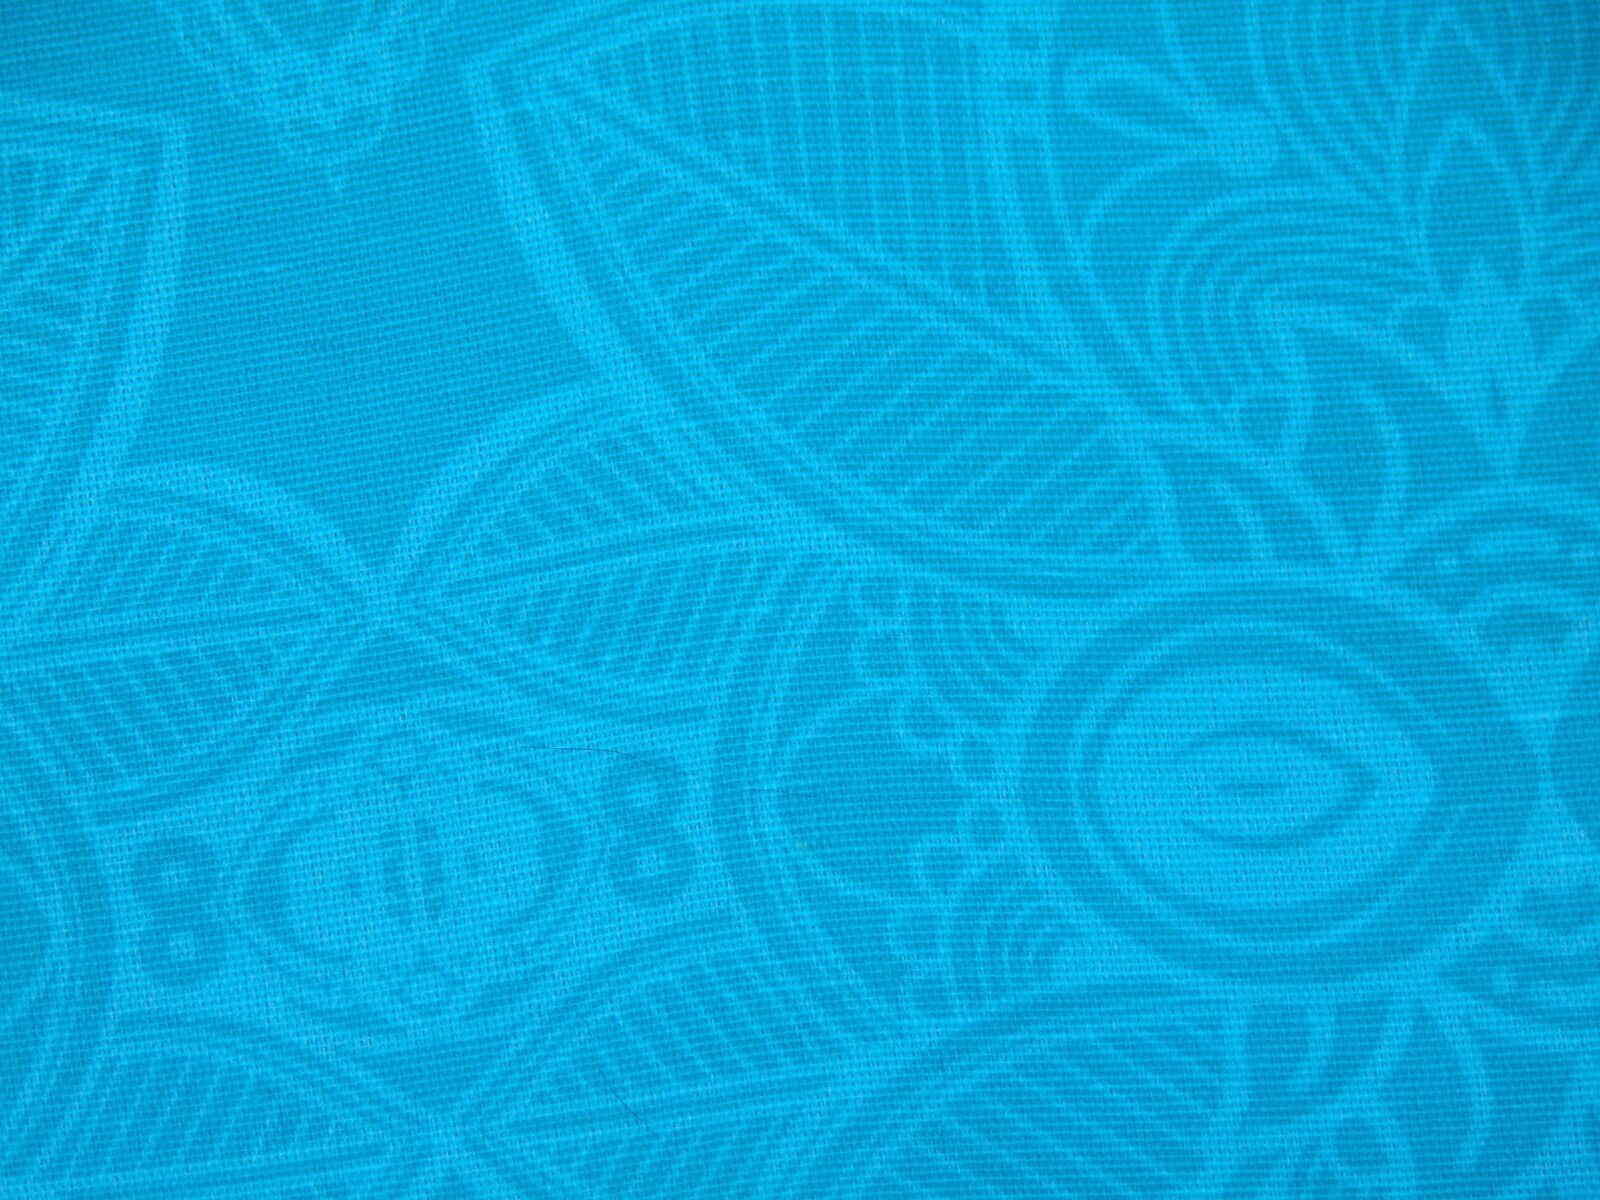 JK KODAK PIXPRO AZ422 sample photo. Fabric, print, texture photography